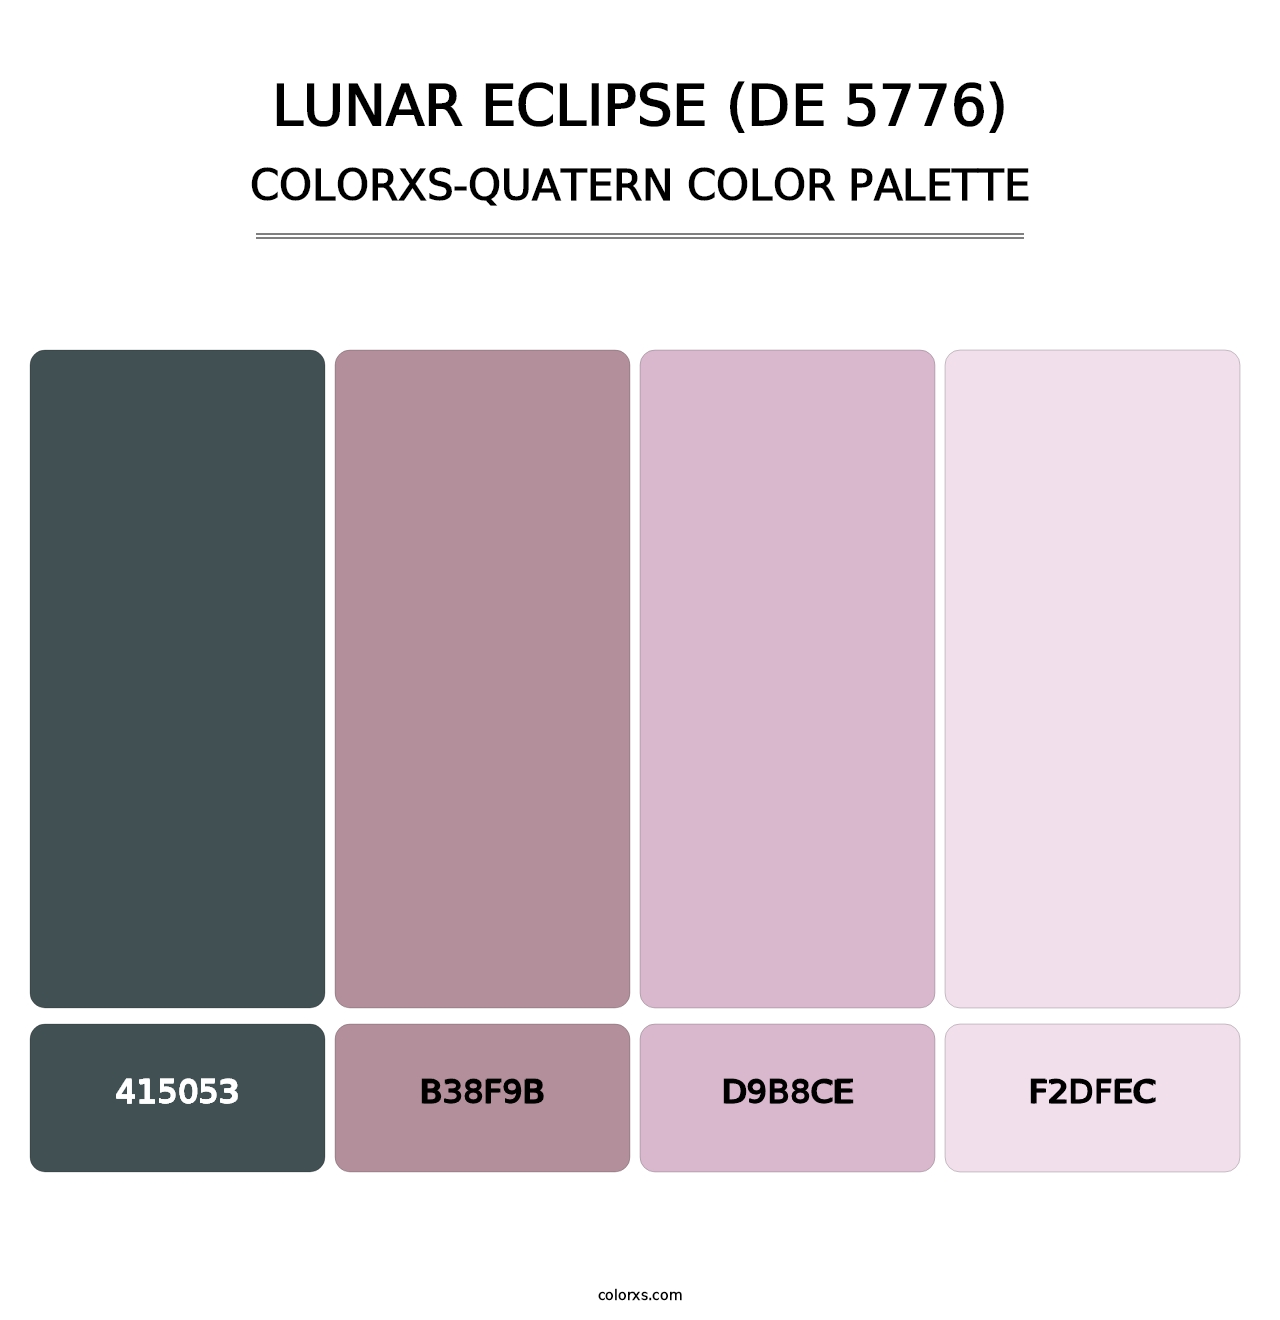 Lunar Eclipse (DE 5776) - Colorxs Quatern Palette